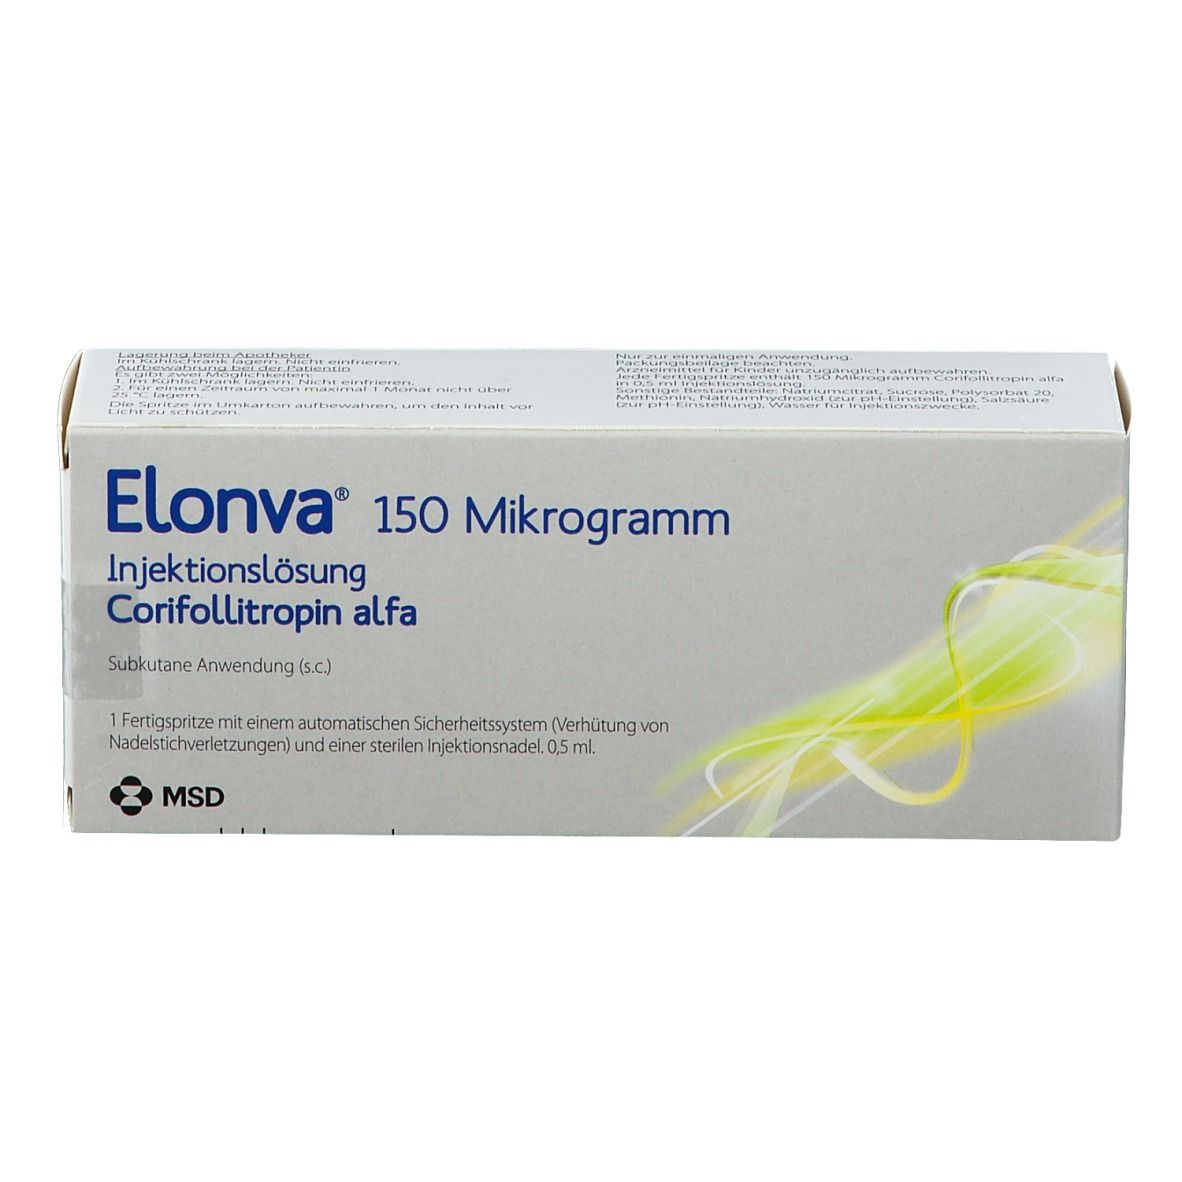 ELONVA® 150 Mikrogramm